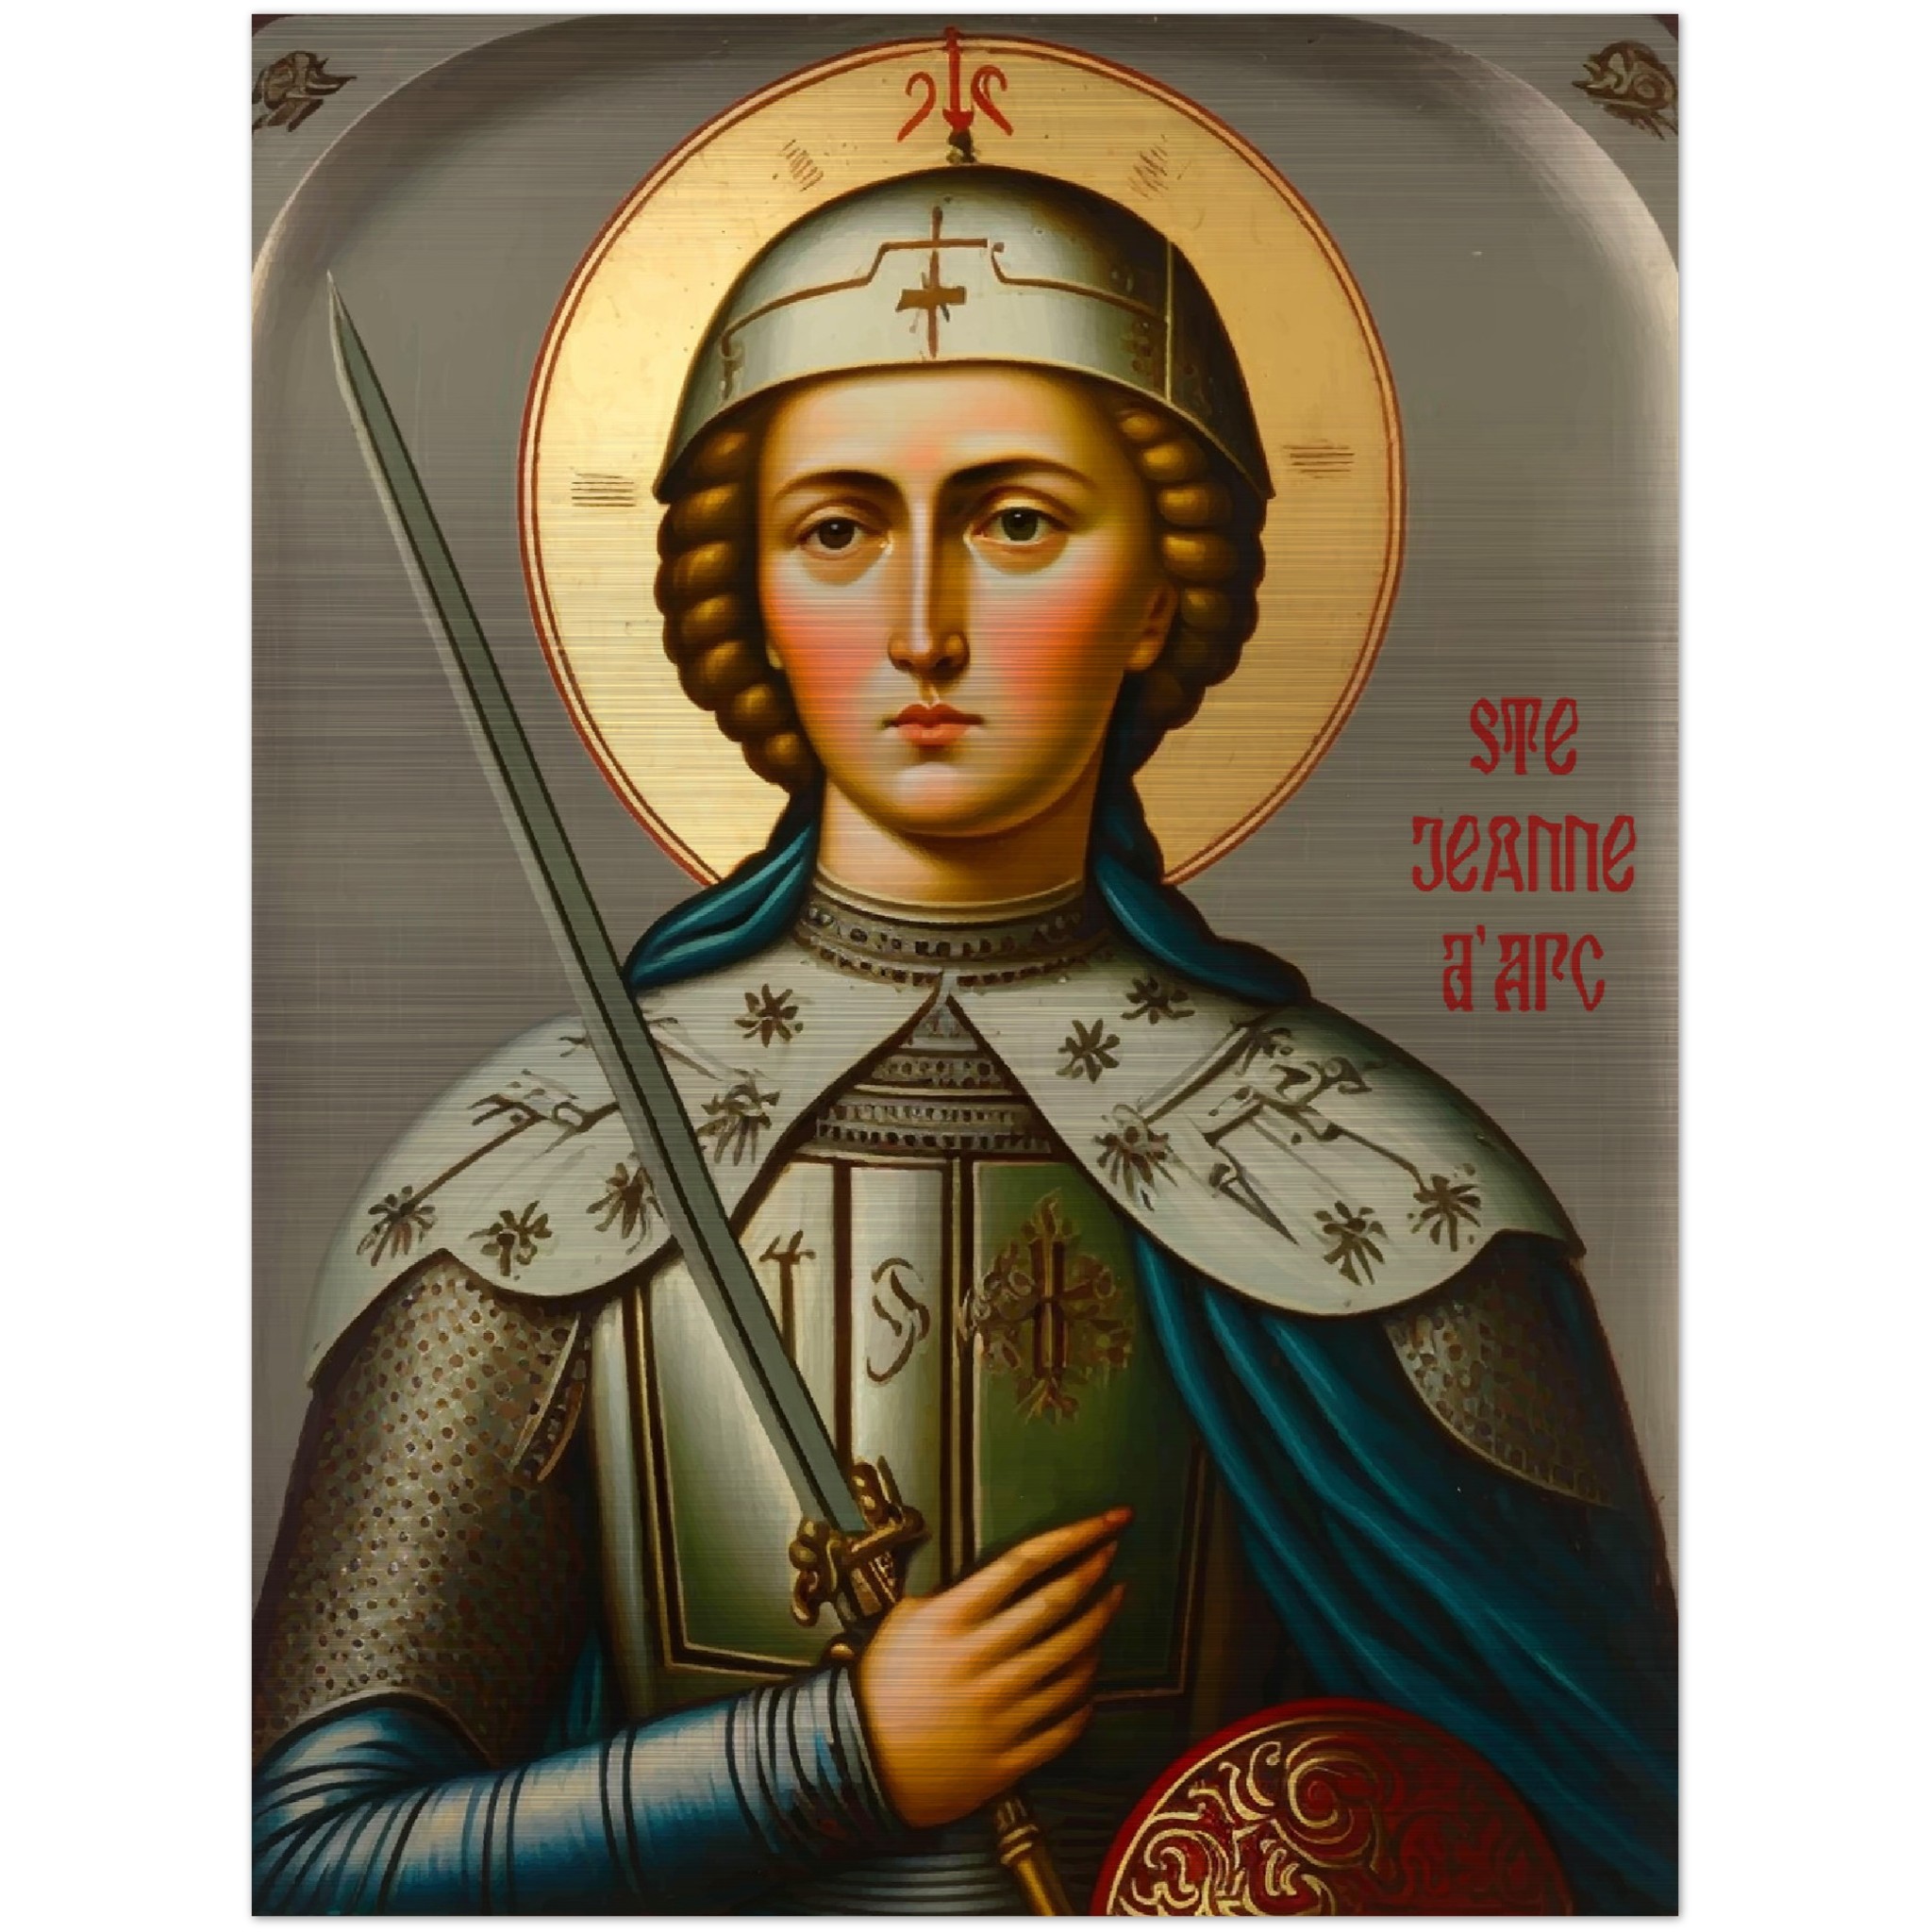 Saint Joan of Arc ✠ Brushed Aluminum Icon Brushed Aluminum Icons Rosary.Team